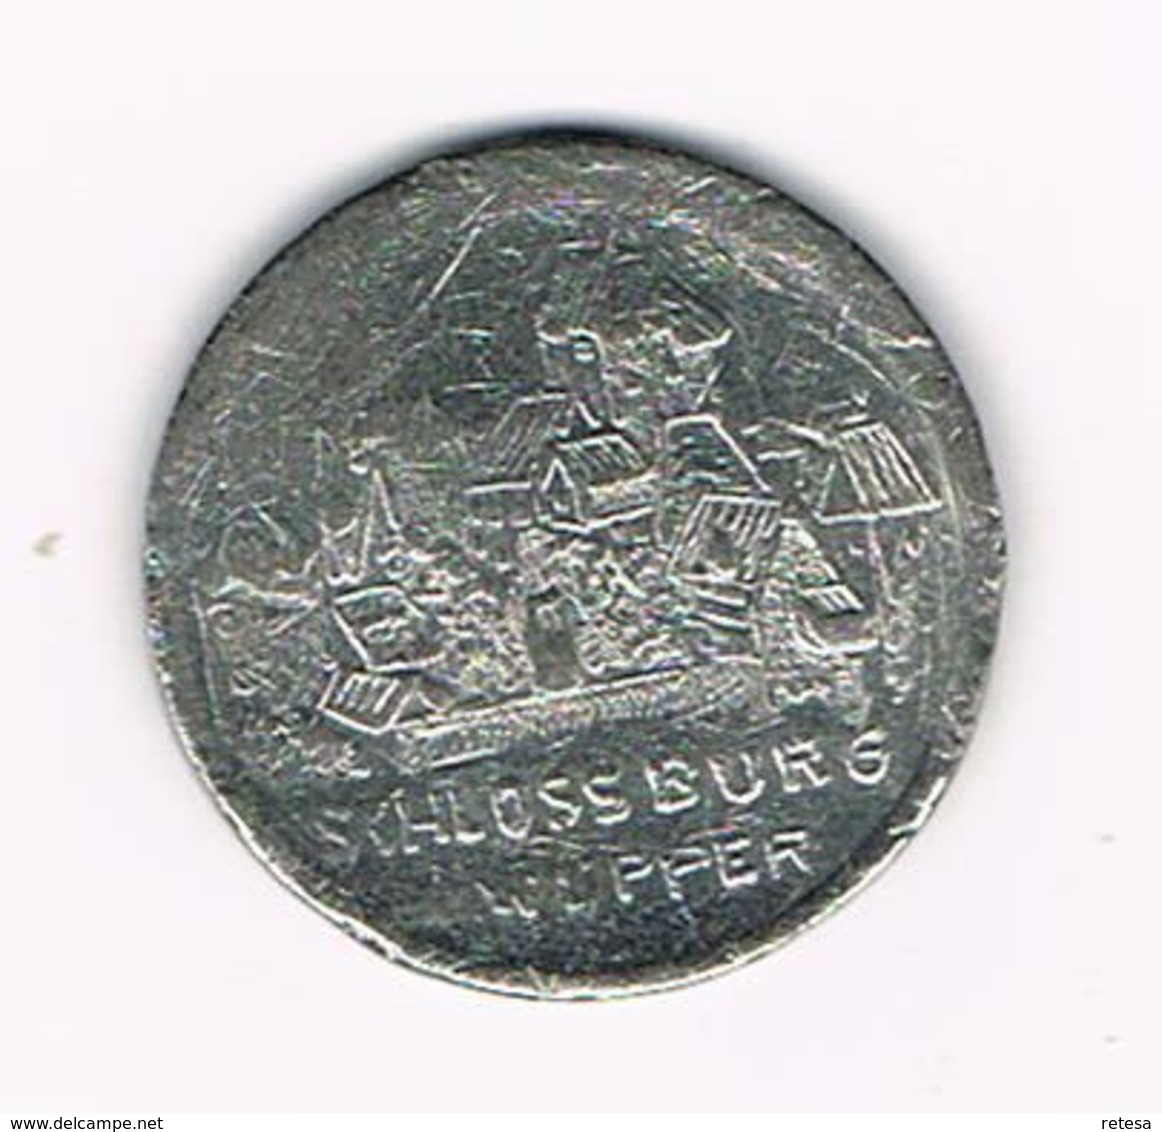 //  PENNING  ENGELBERT II - SCHLOSSBURG A.d. WUPPER - Pièces écrasées (Elongated Coins)